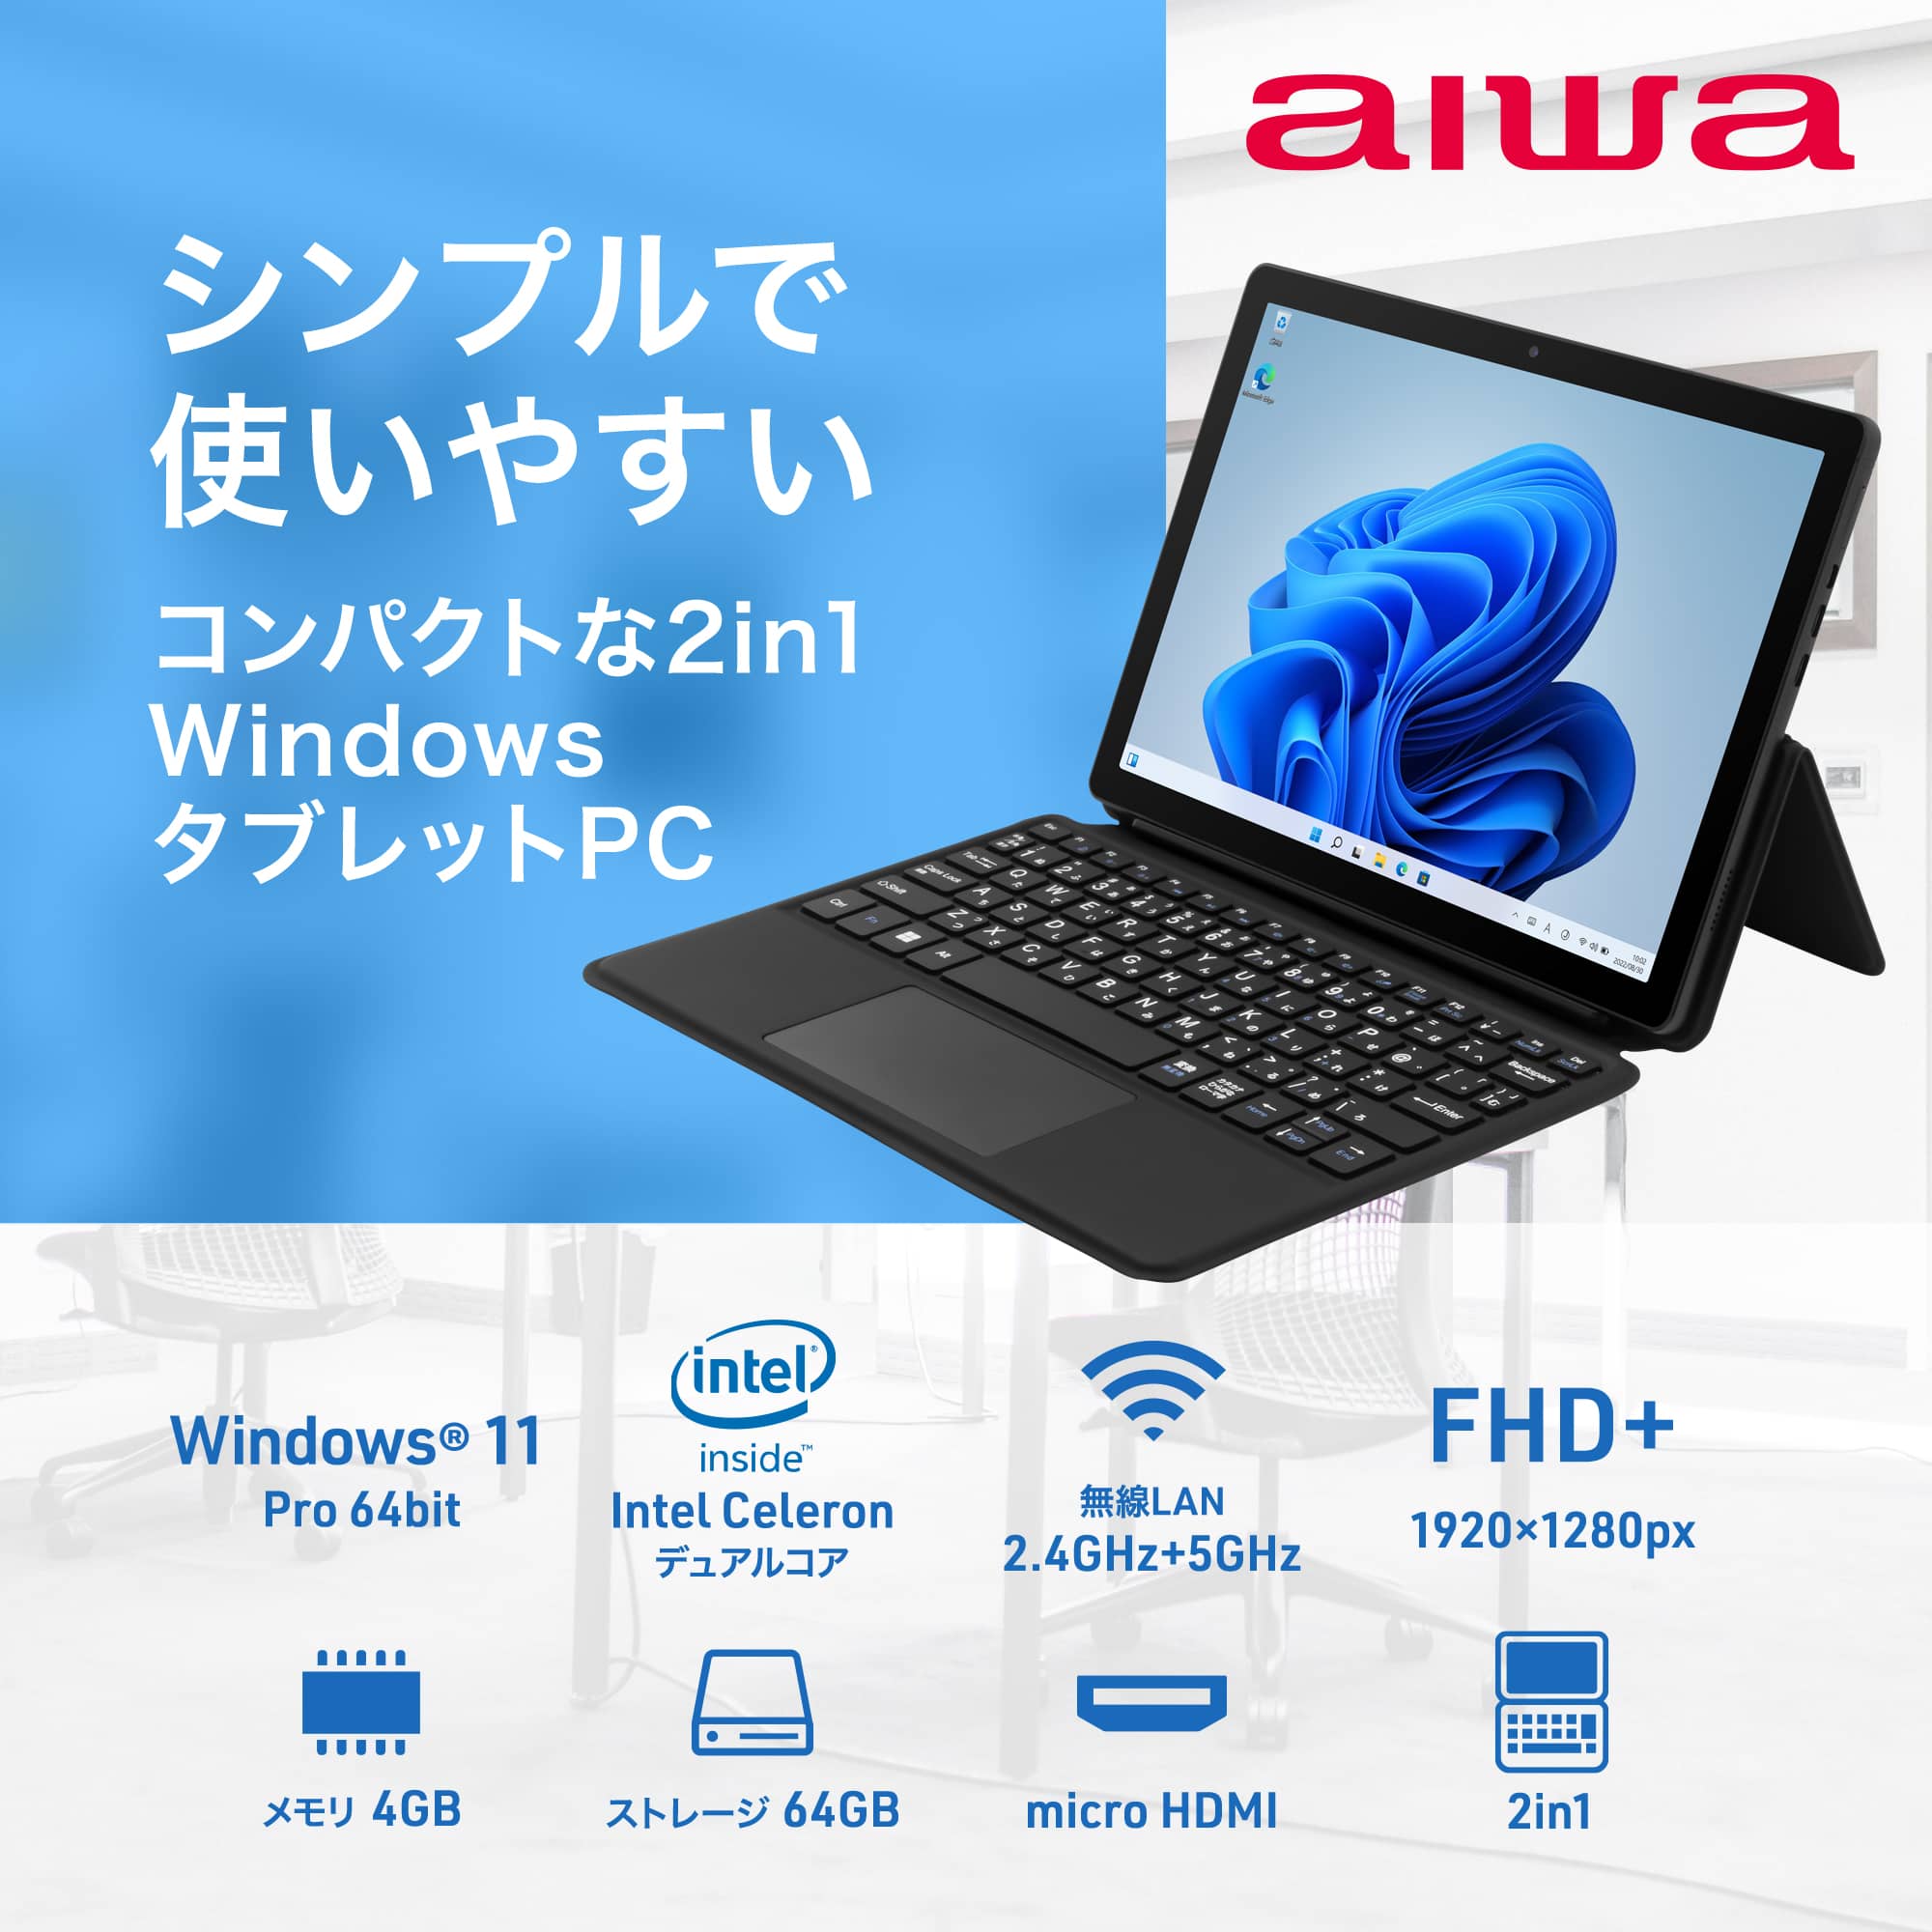 aiwa 10.5インチWindows 2in1タブレット(専用画面フィルムパック)【JA2-TBW1001-DP】